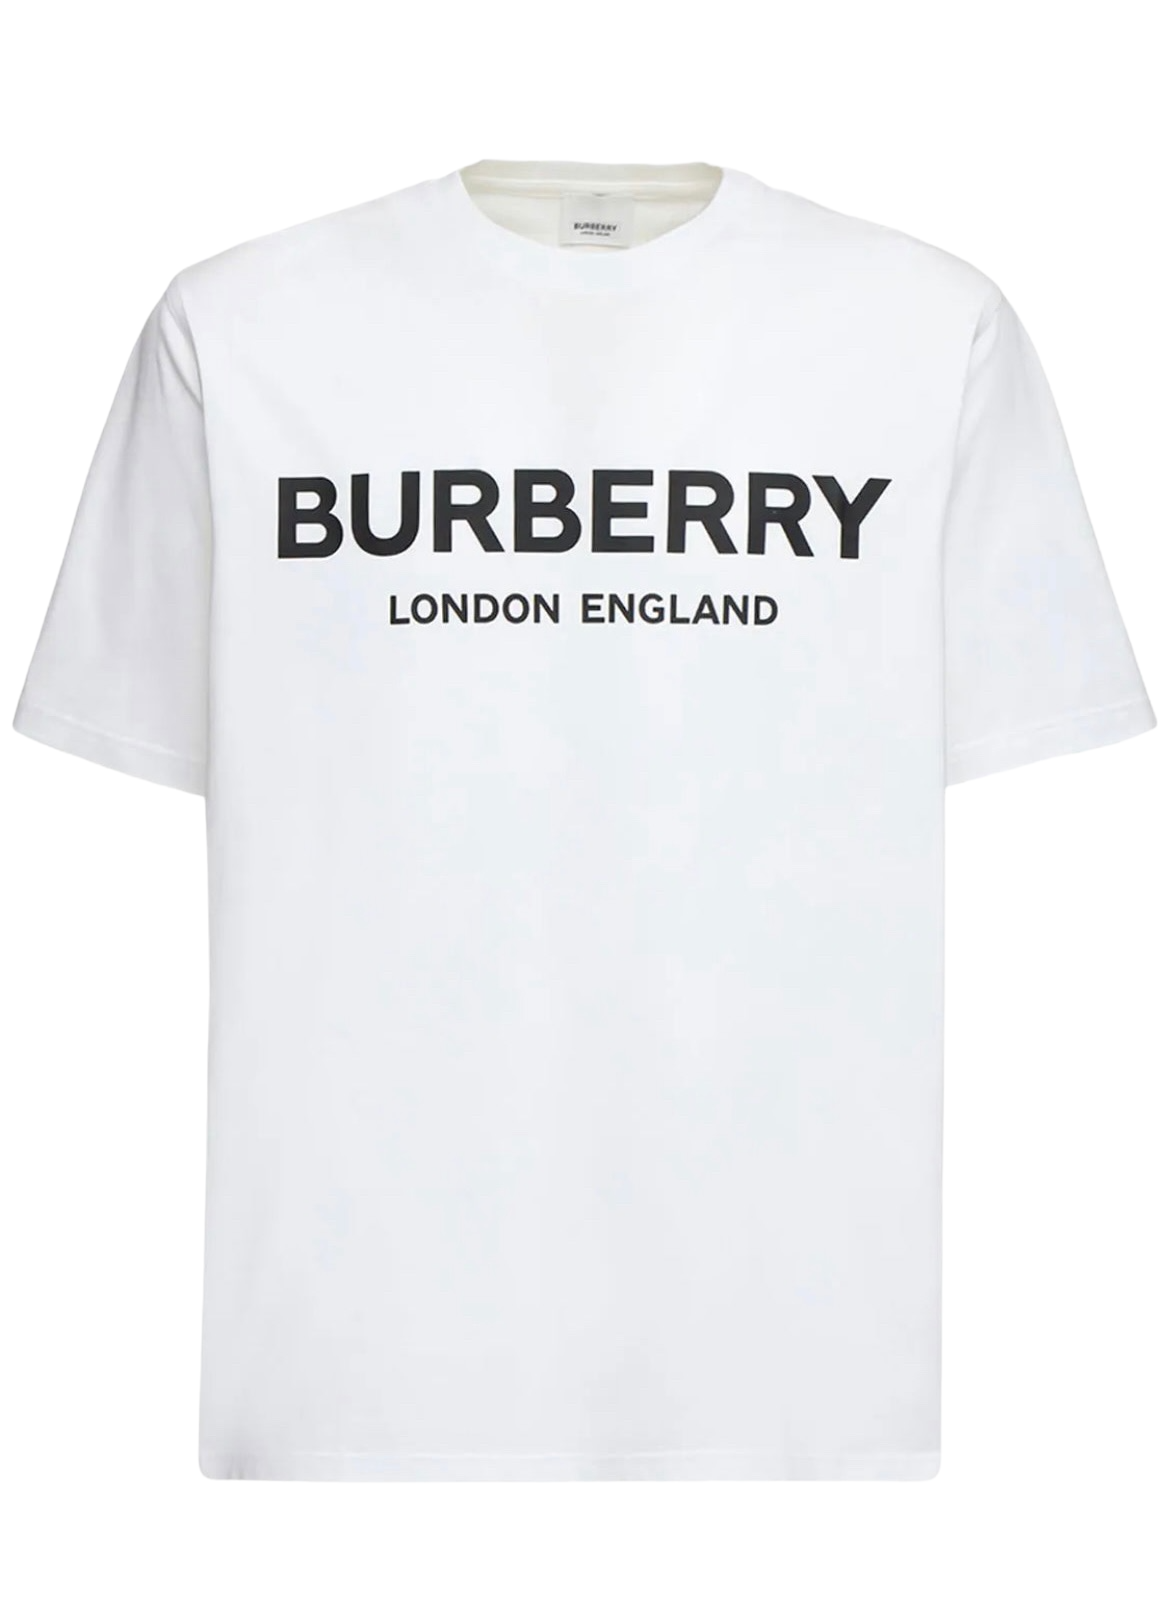 貴重BURBERRY LONDON ENGLAND ロゴT サイズL 状態良い トップス